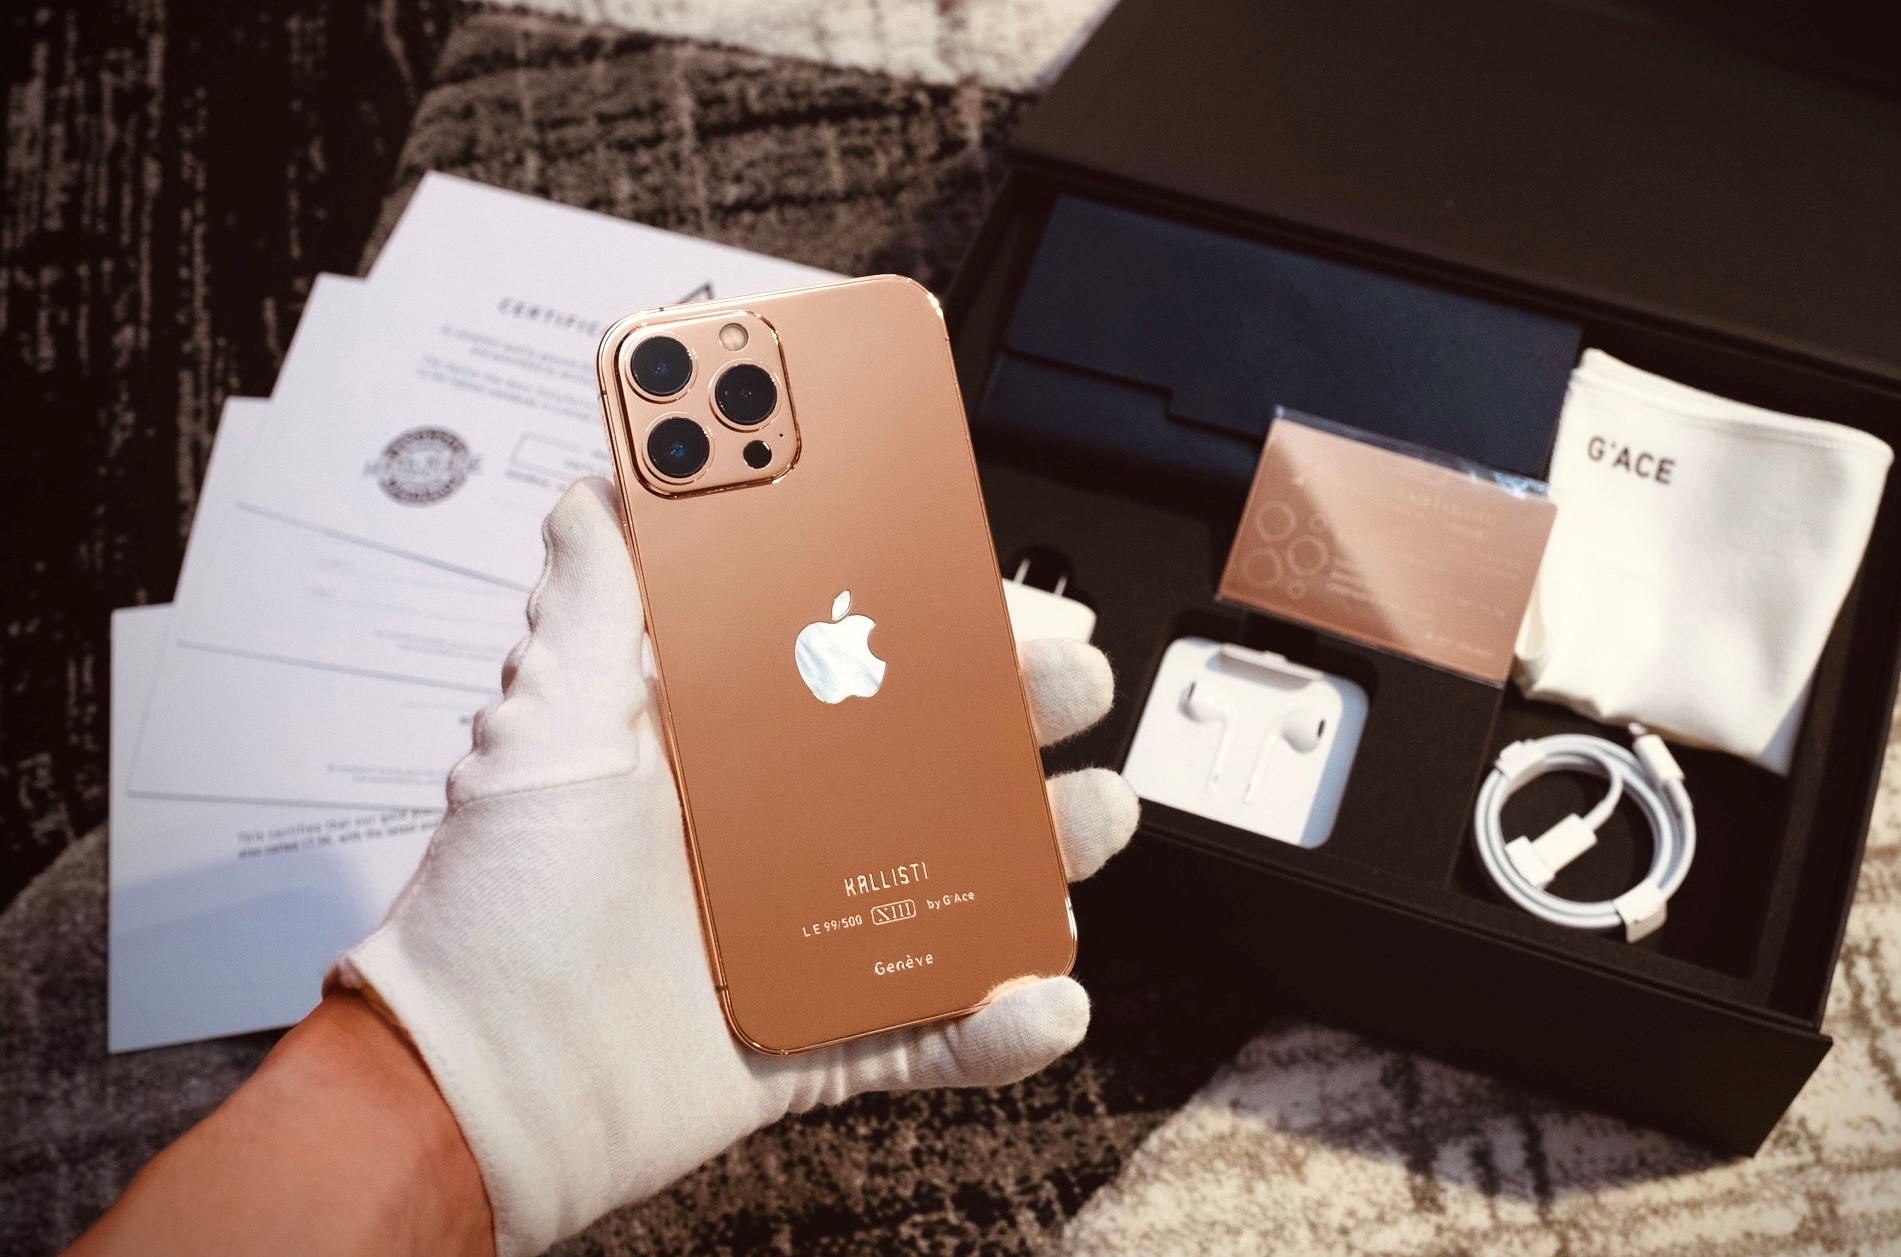 Chi tiết iPhone 13 Pro Max bản mạ vàng và kim cương siêu “sang chảnh” giá hơn 130 triệu đồng tại Việt Nam - Ảnh 9.